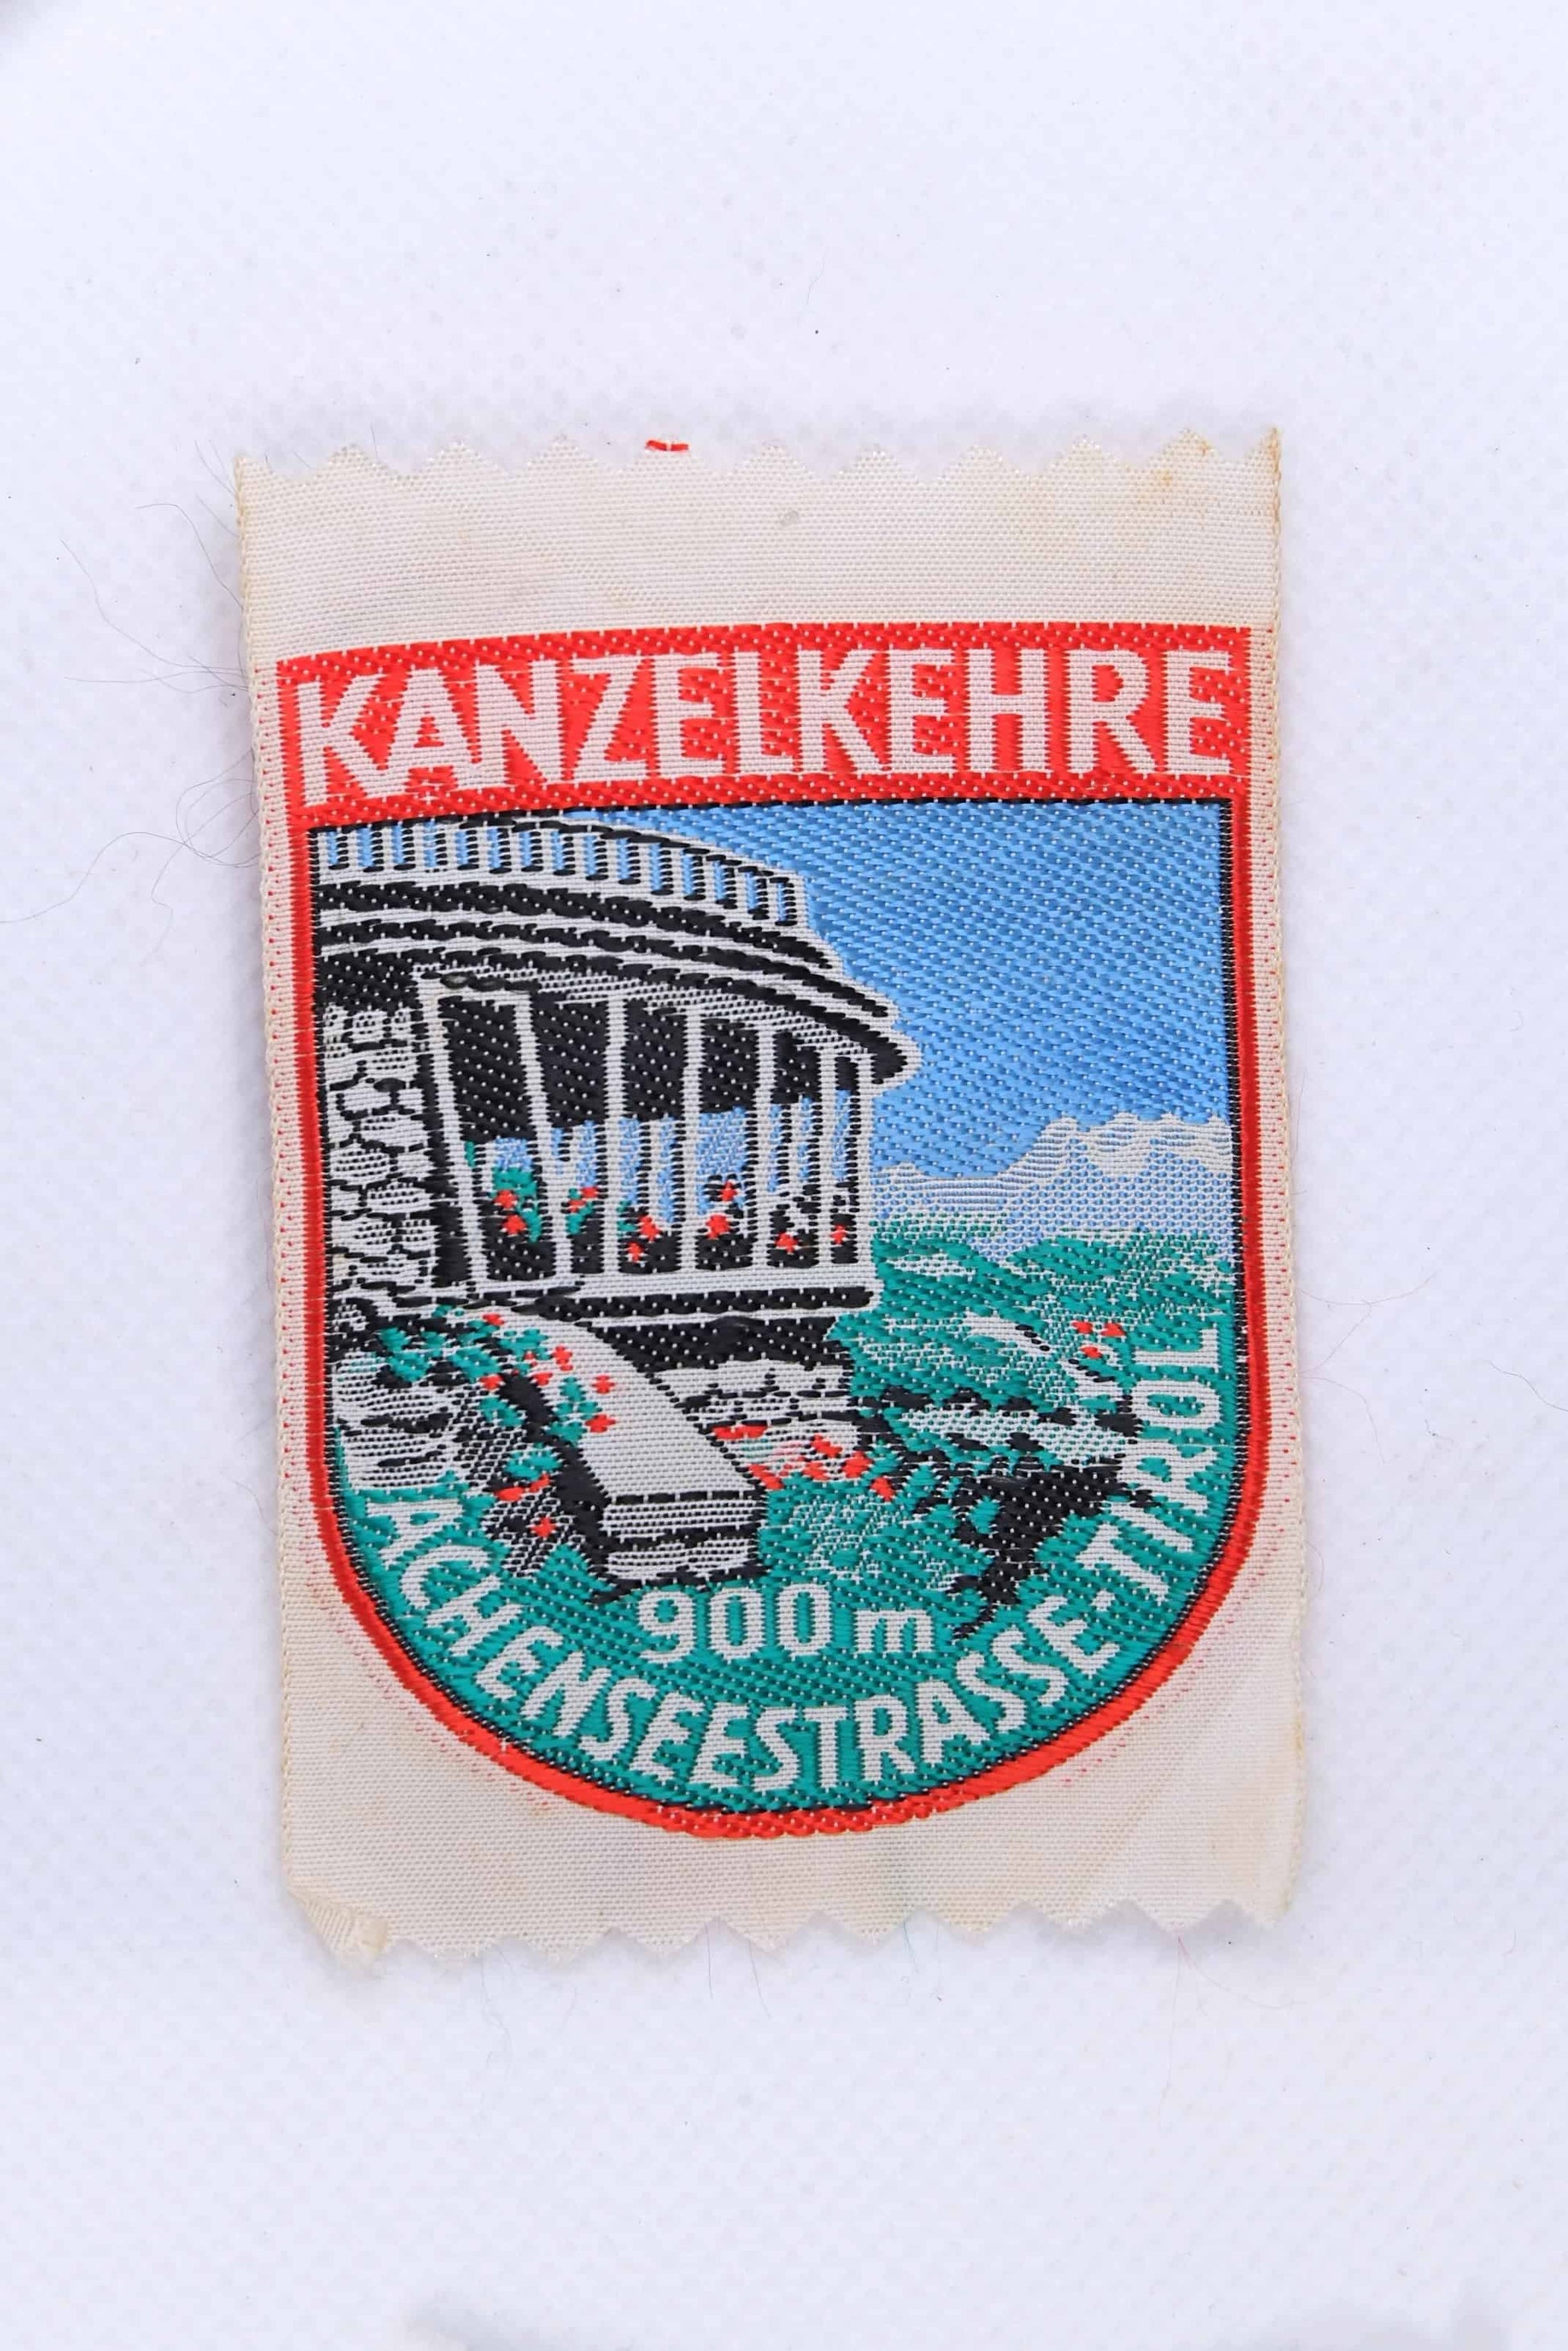 Vintage KANZELKEHRE AUSTRIA Embroidered Ski Patch